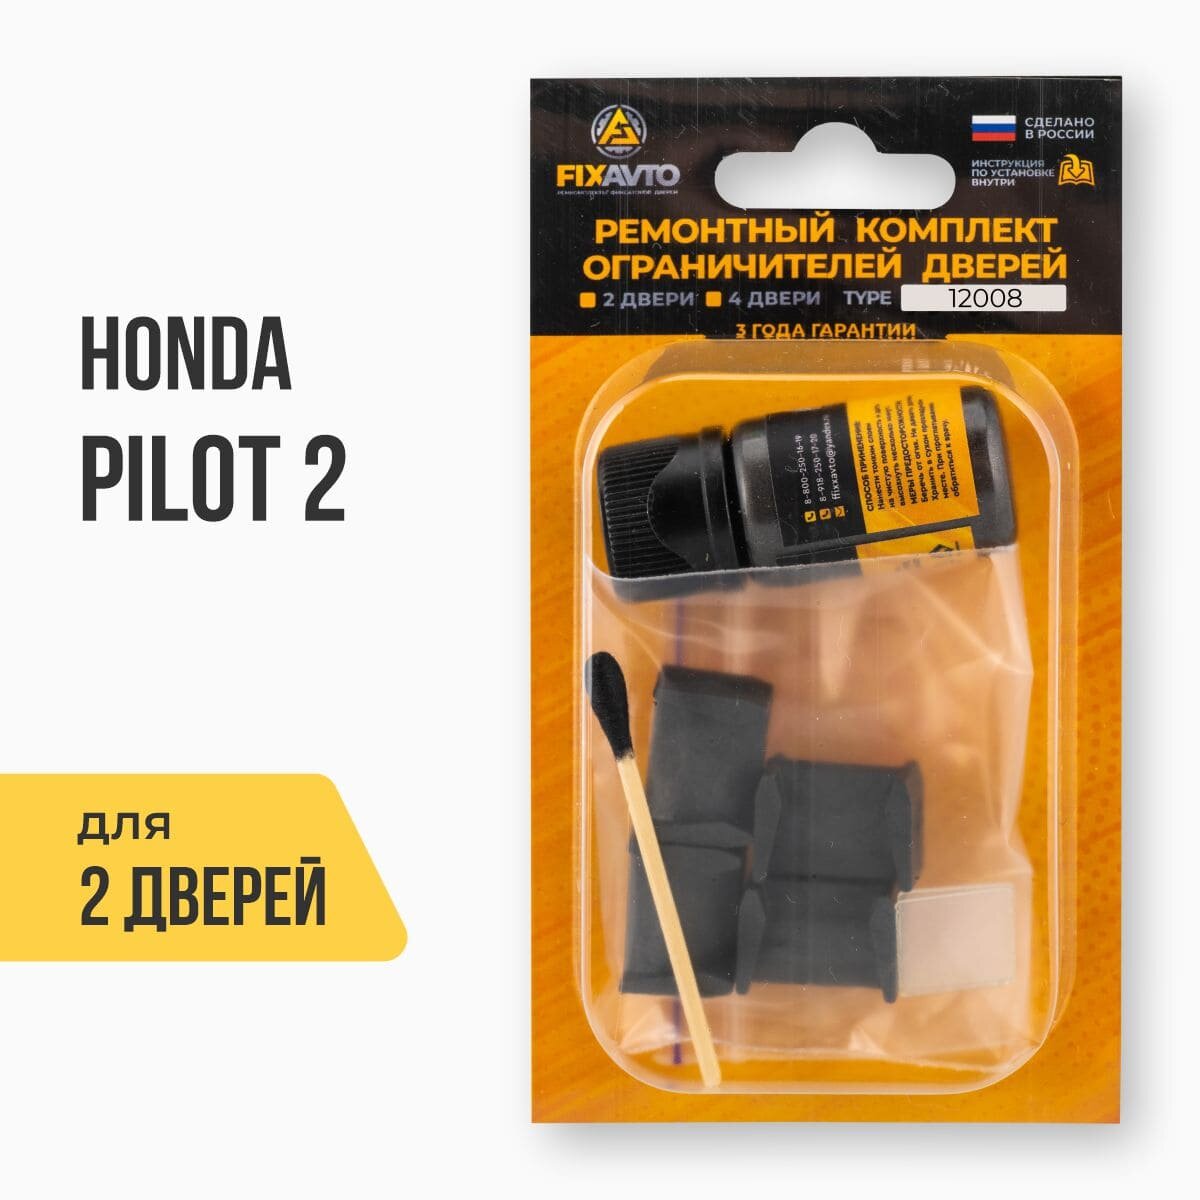 Ремкомплект ограничителей на 2 двери Honda PILOT II после рестайлинга 2 поколения, Кузов: YF4 после рестайлинга, Г. в: 12.2011-2015 TYPE 12008 Тип 8